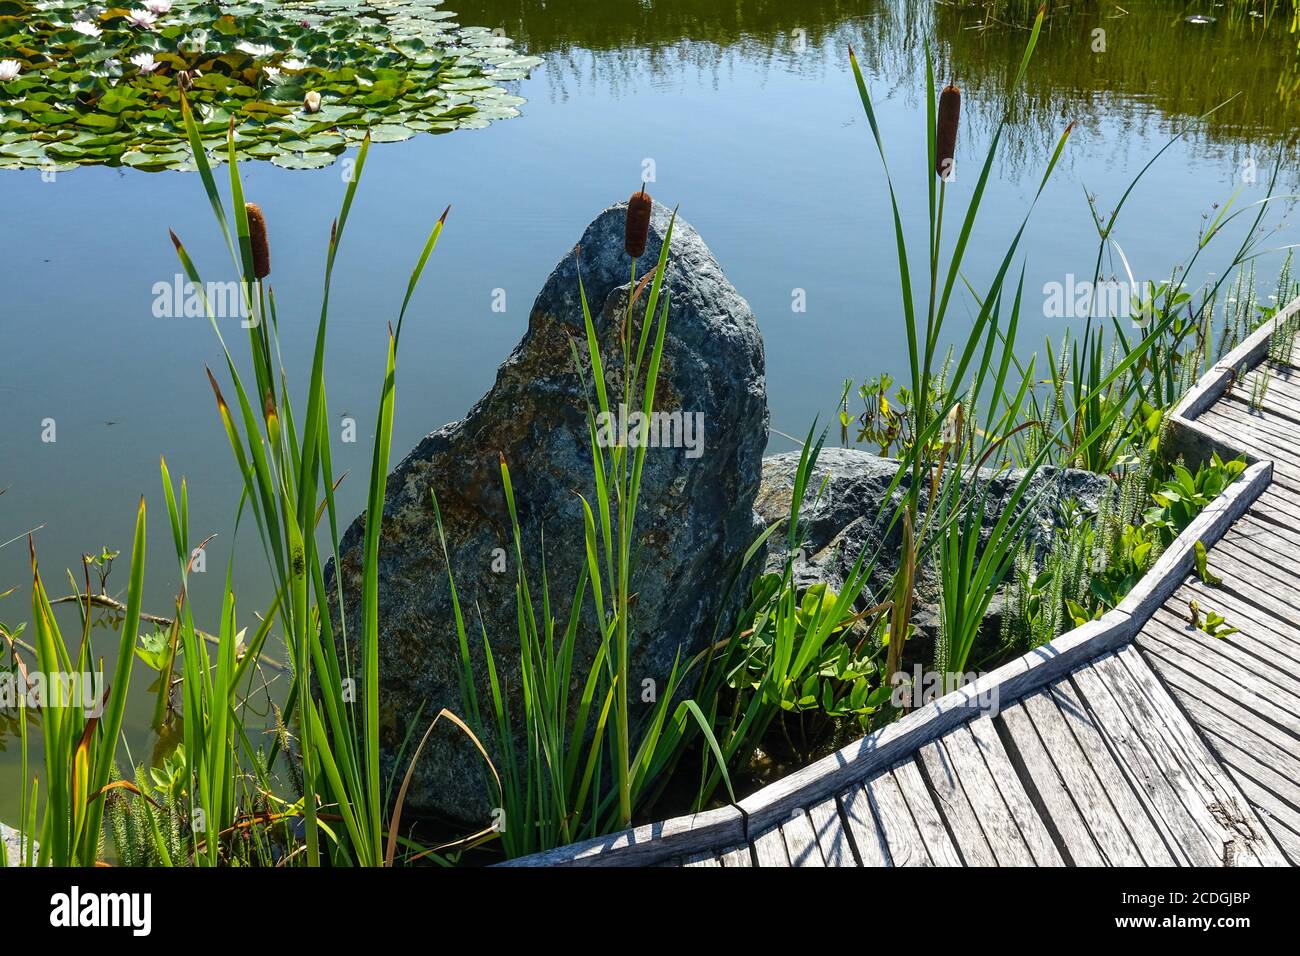 Pietra decorativa e piante acquatiche in crescita, cannuccia e ninfee in un laghetto giardino, un percorso in legno intorno, raccolta di acqua piovana Foto Stock